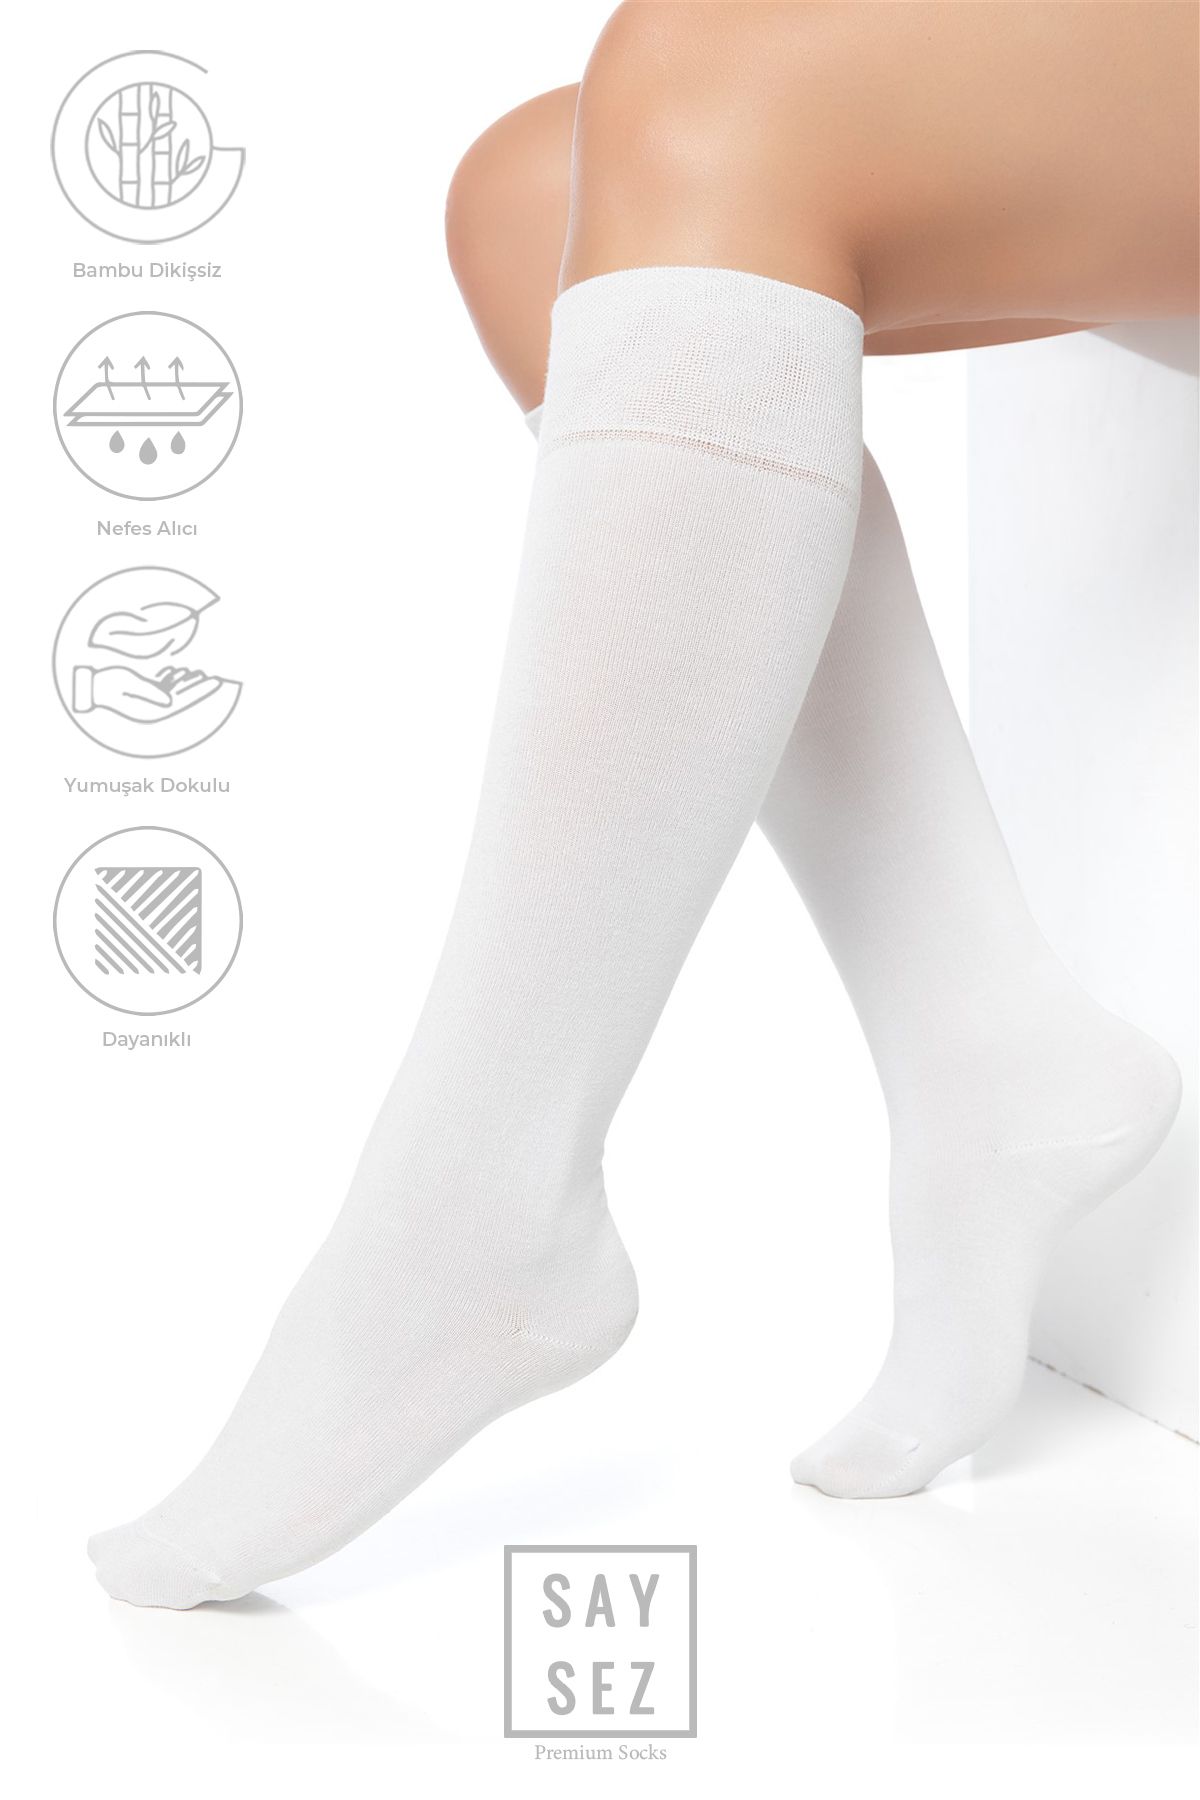 SAYSEZ Bambu Kadın Dizaltı Premium Düz Beyaz Renk Yumuşak Uzun Dikişsiz Çorap / Teni Göstermeyen Çorap